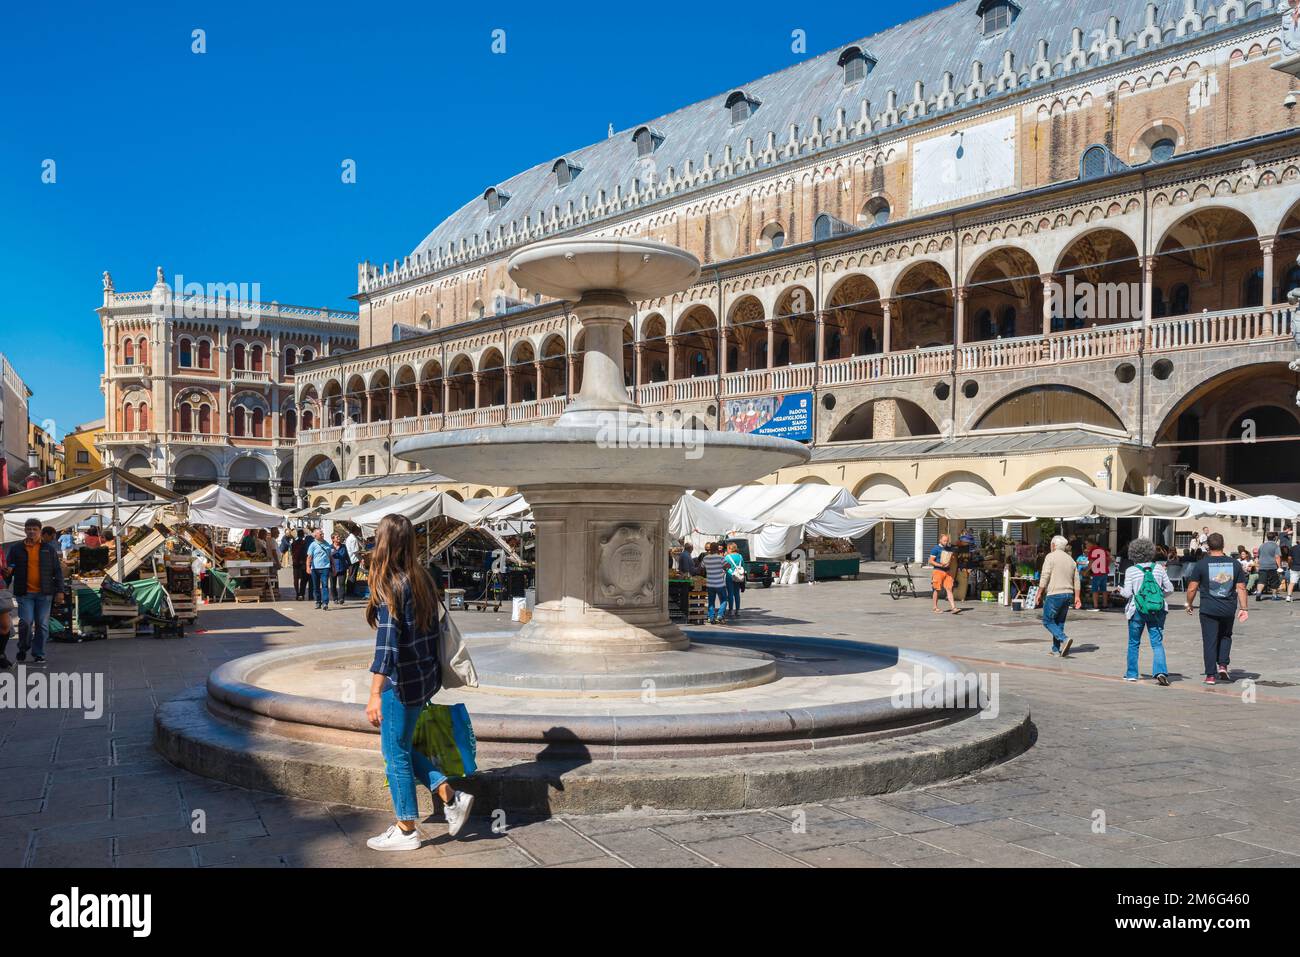 Stadtzentrum von Padua, Blick im Sommer auf die Piazza delle Erbe und den Palazzo della Ragione aus dem 13. Jahrhundert oder Salone, Padua (Padua), Veneto, Italien Stockfoto